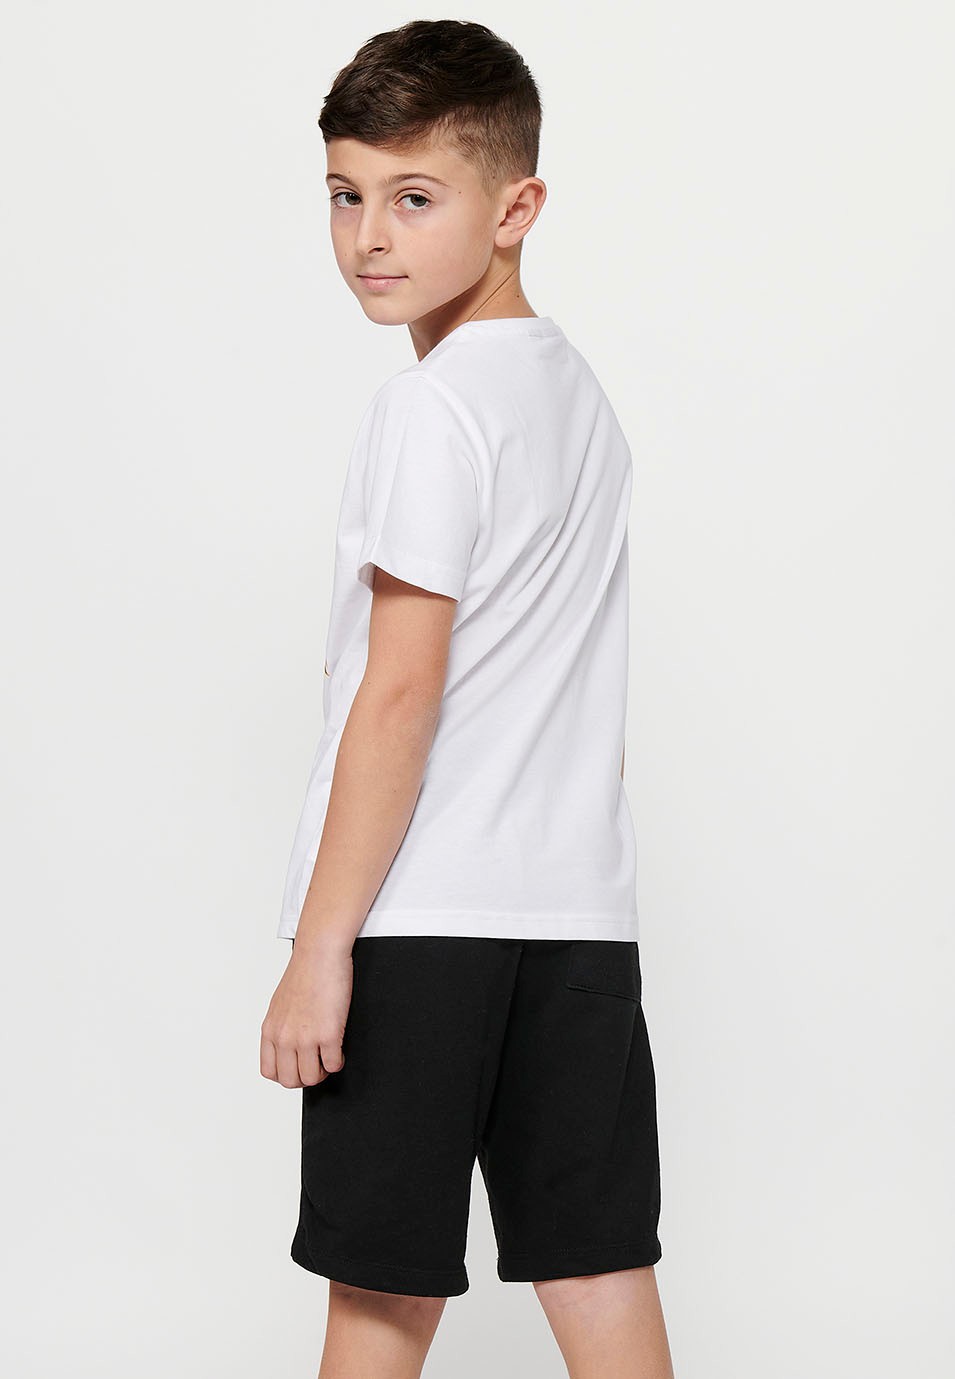 T-shirt en coton à manches courtes et encolure ronde. Imprimé blanc sur le devant pour garçon